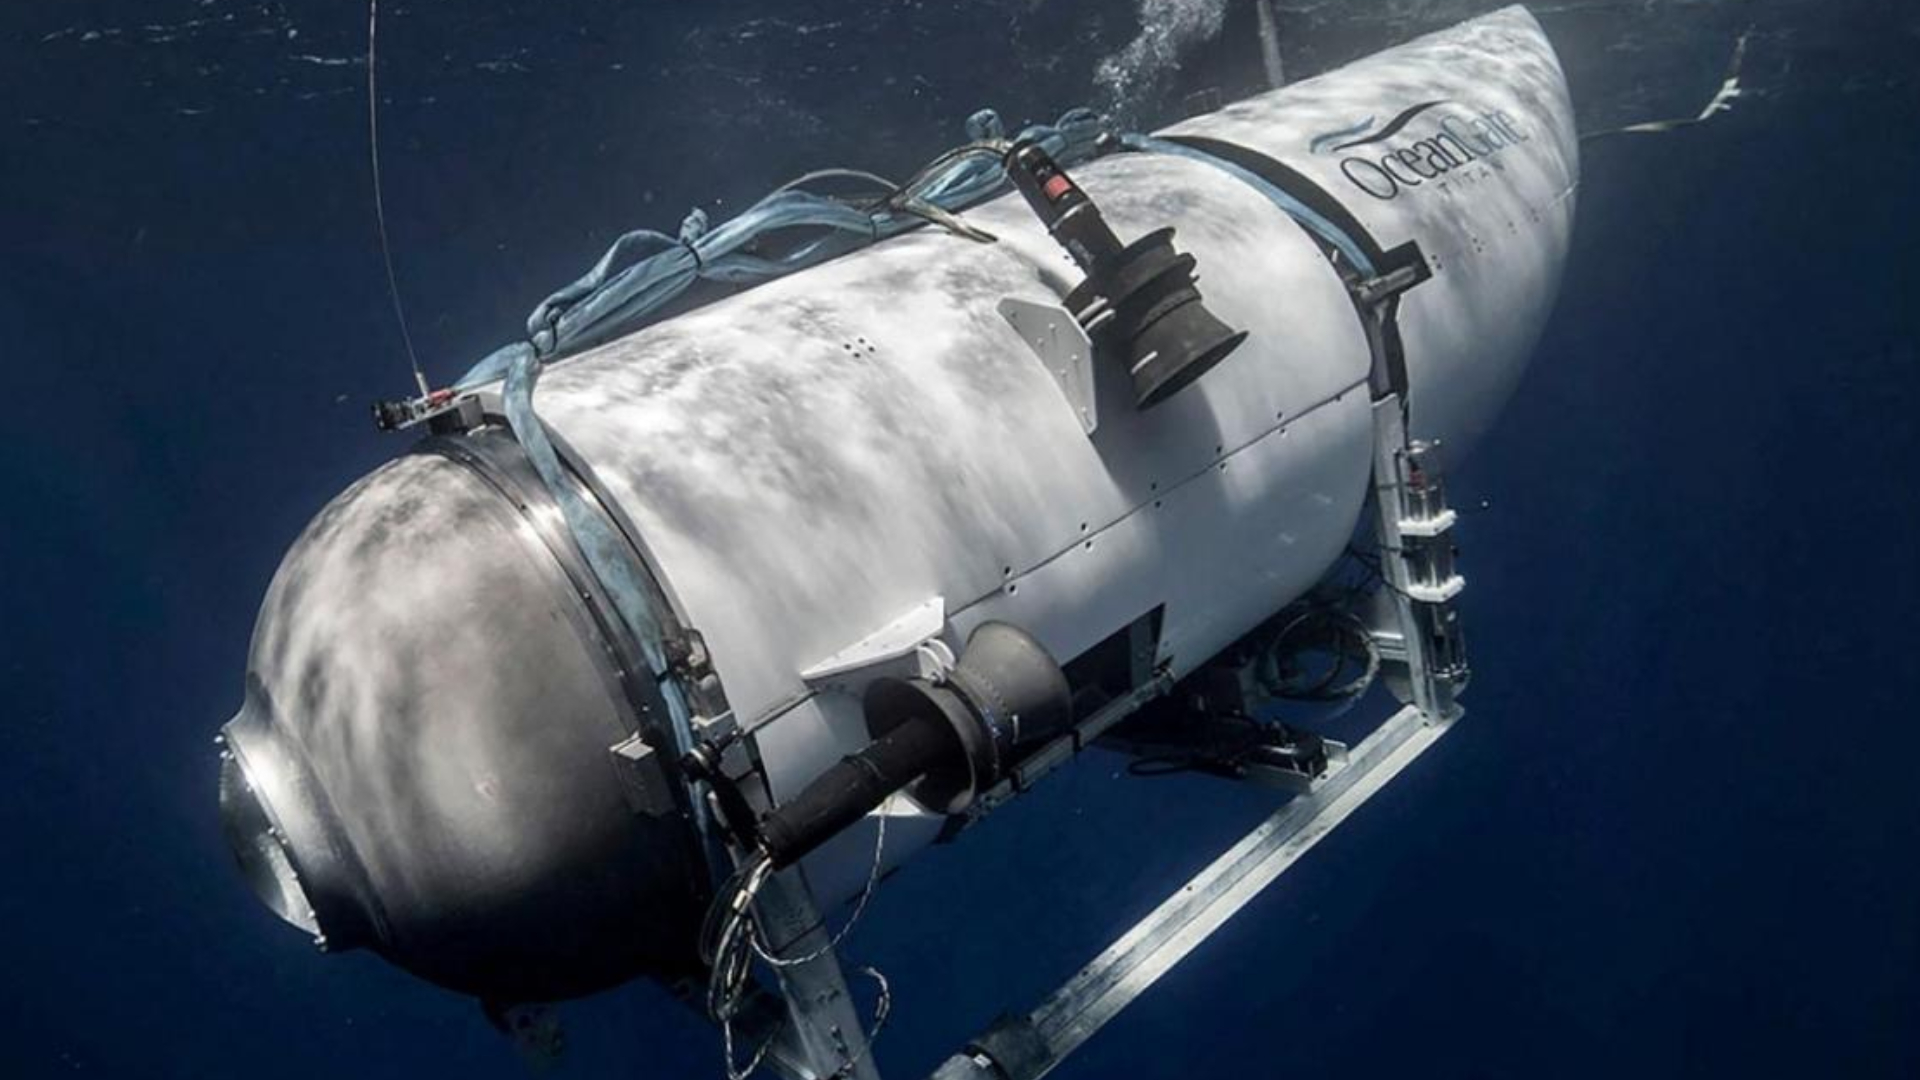 Passageiros ficaram sabendo que submarino implodiria um minuto antes, revela estudo: “Foi um filme de terror”